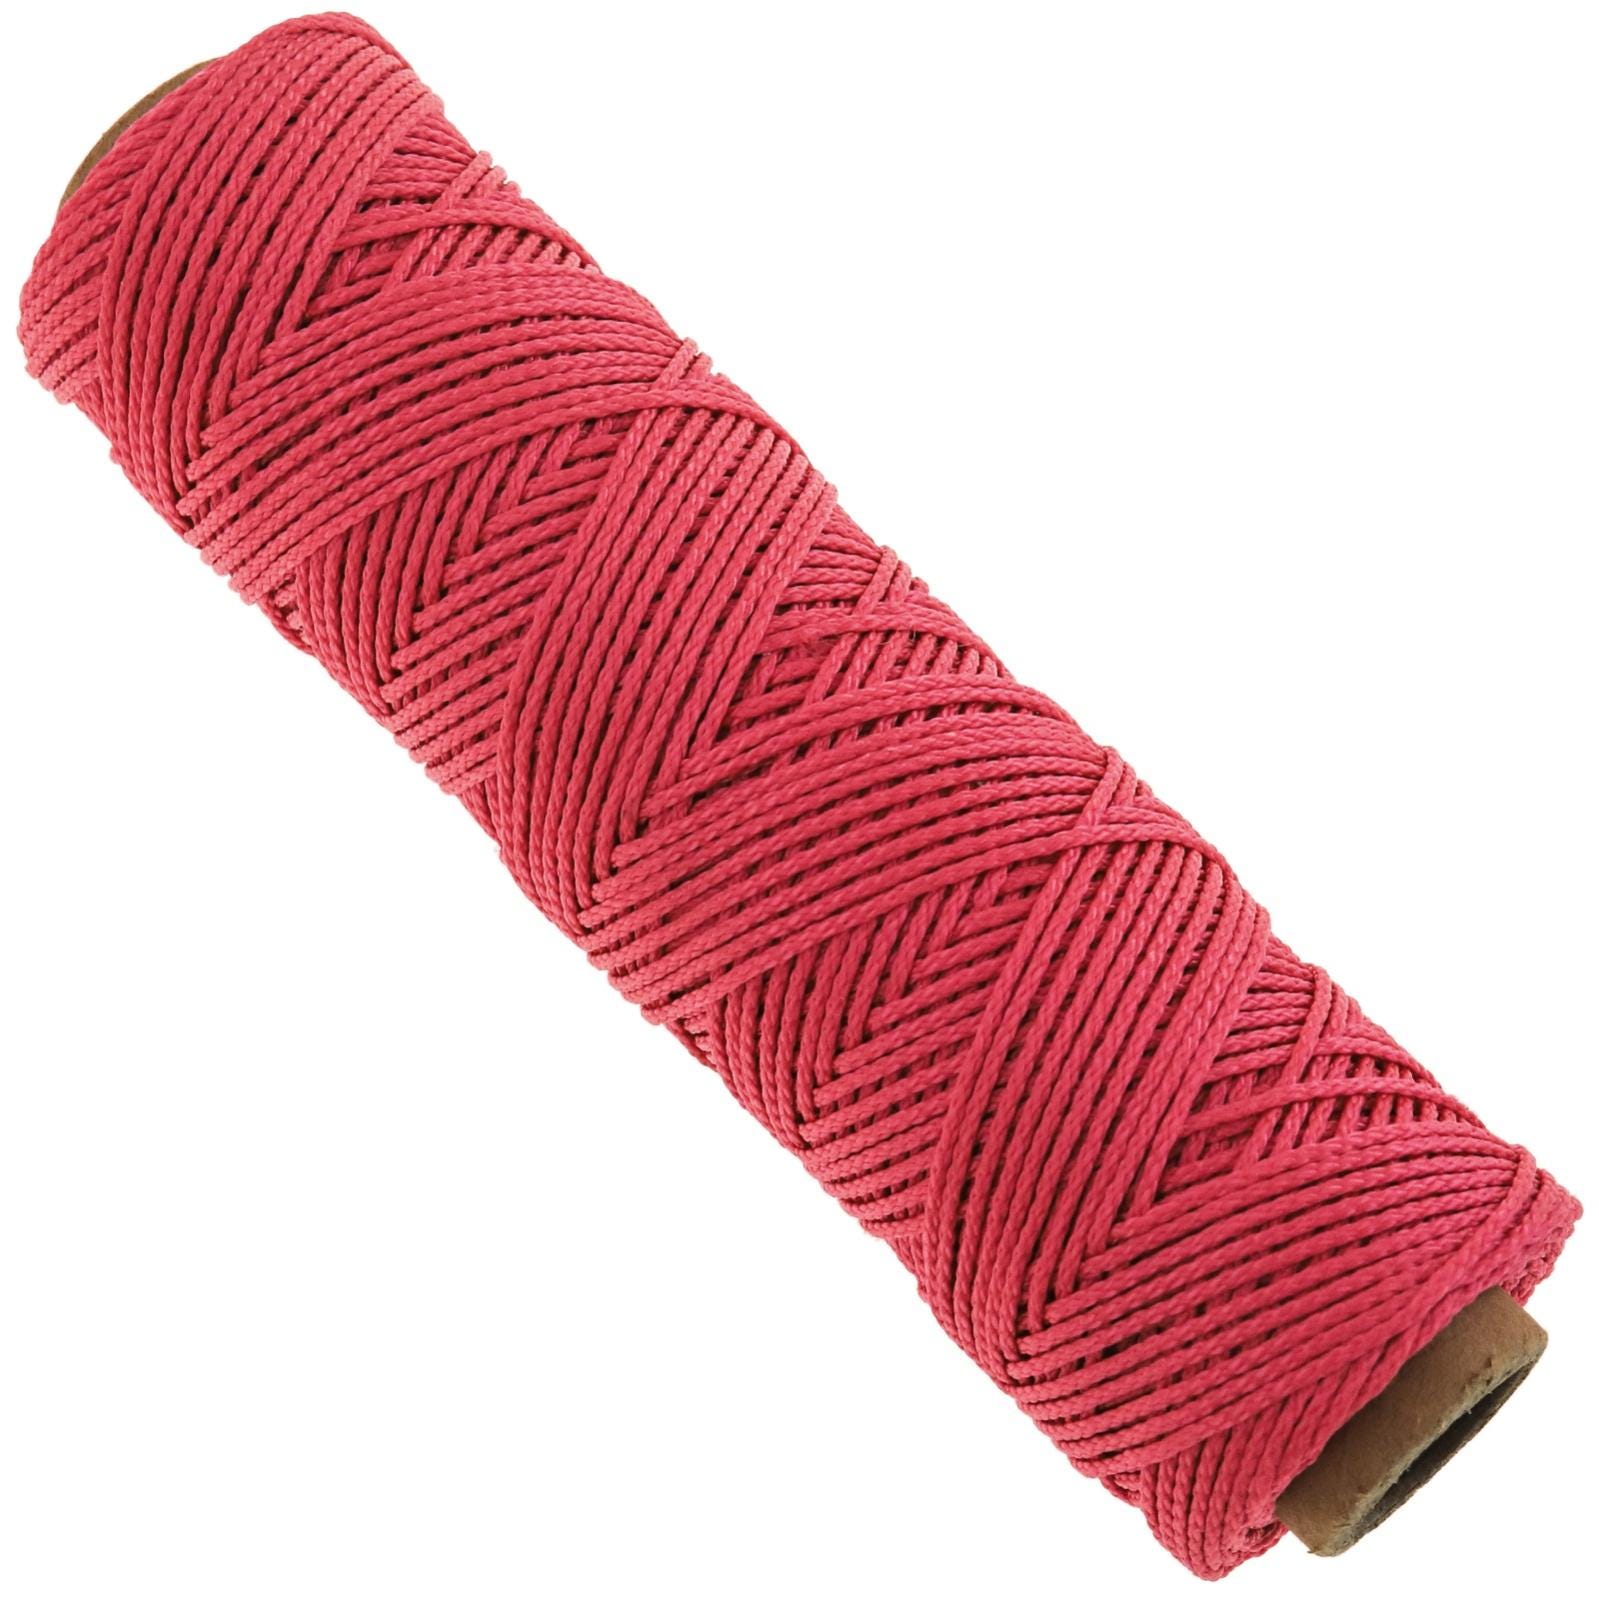 Corde conçue sous forme de tresse en nylon rose 50 mx 2 mm